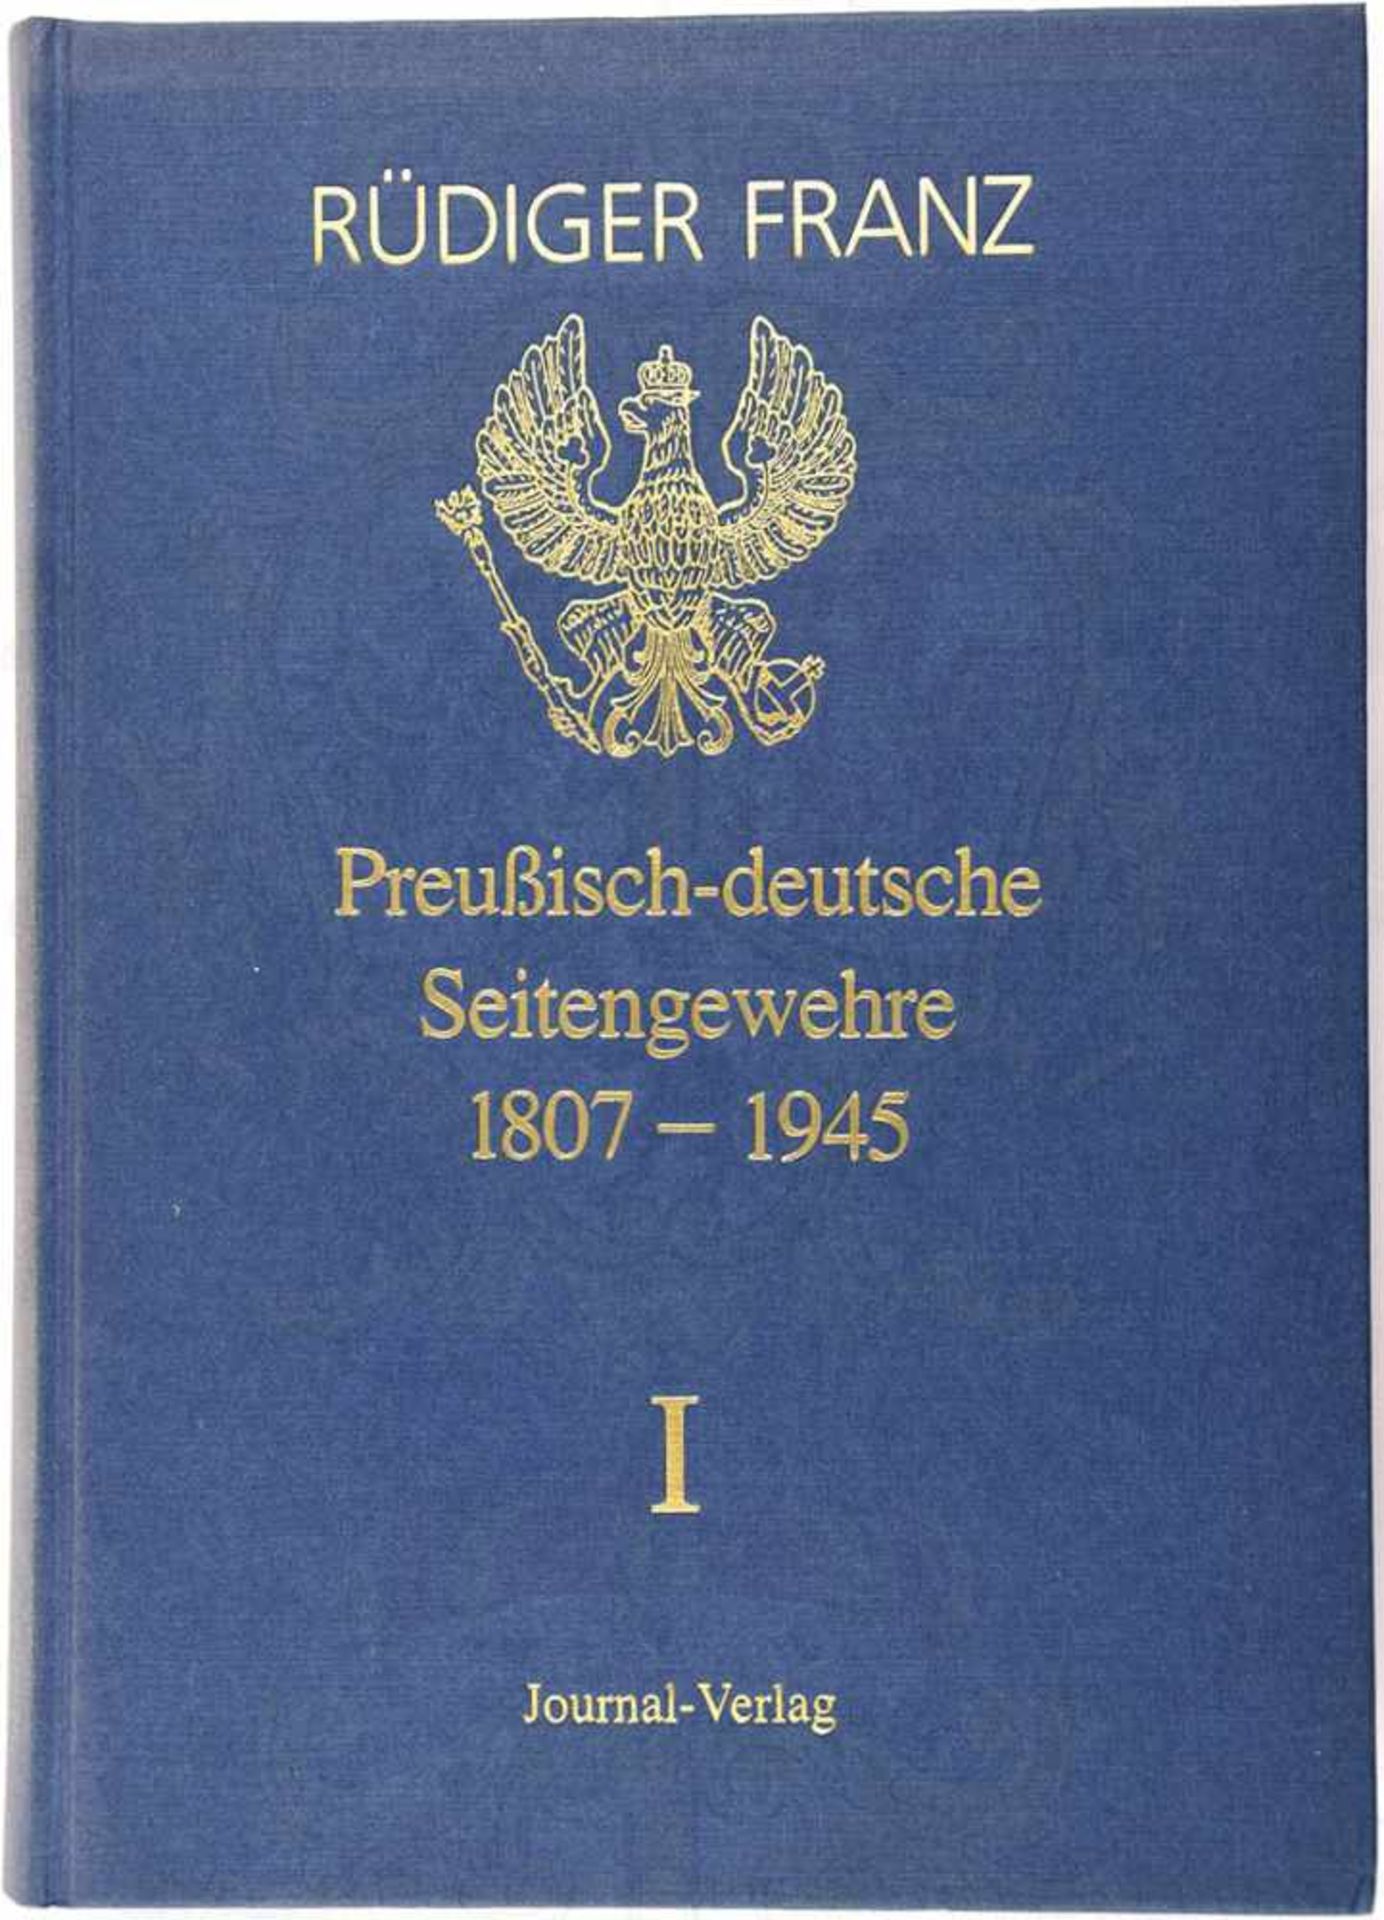 PREUßISCH-DEUTSCHE SEITENGEWEHRE 1807-1945, Rüdiger Franz, Bd. 1, Journal-V. 1988, zahlr. Fotos u.